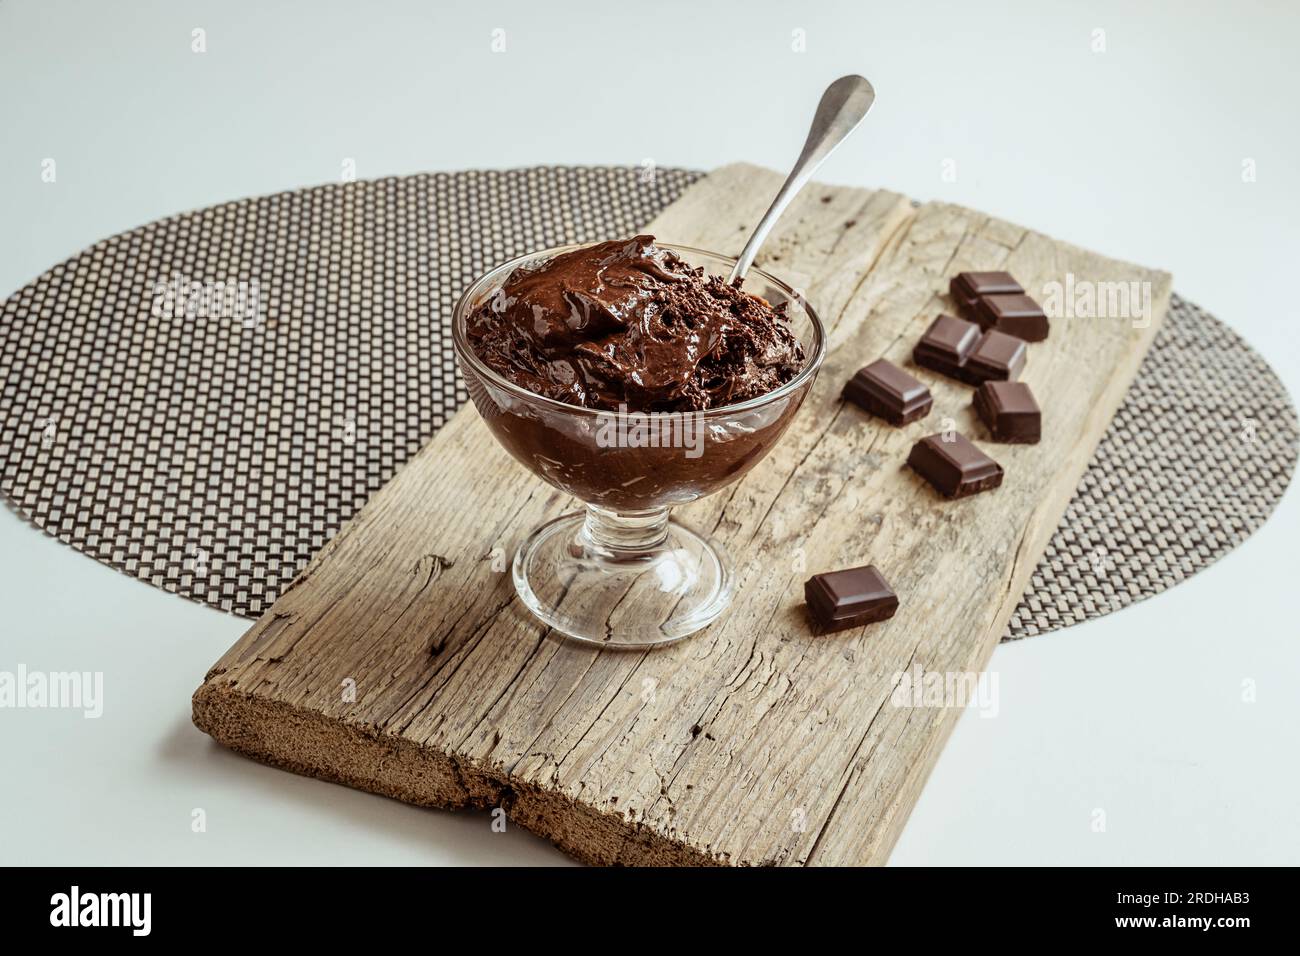 Eine transparente Schüssel mit Schokoladenmousse, traditionellem französischen Dessert und Stücken dunkler Schokolade auf einem Holzbrett Stockfoto